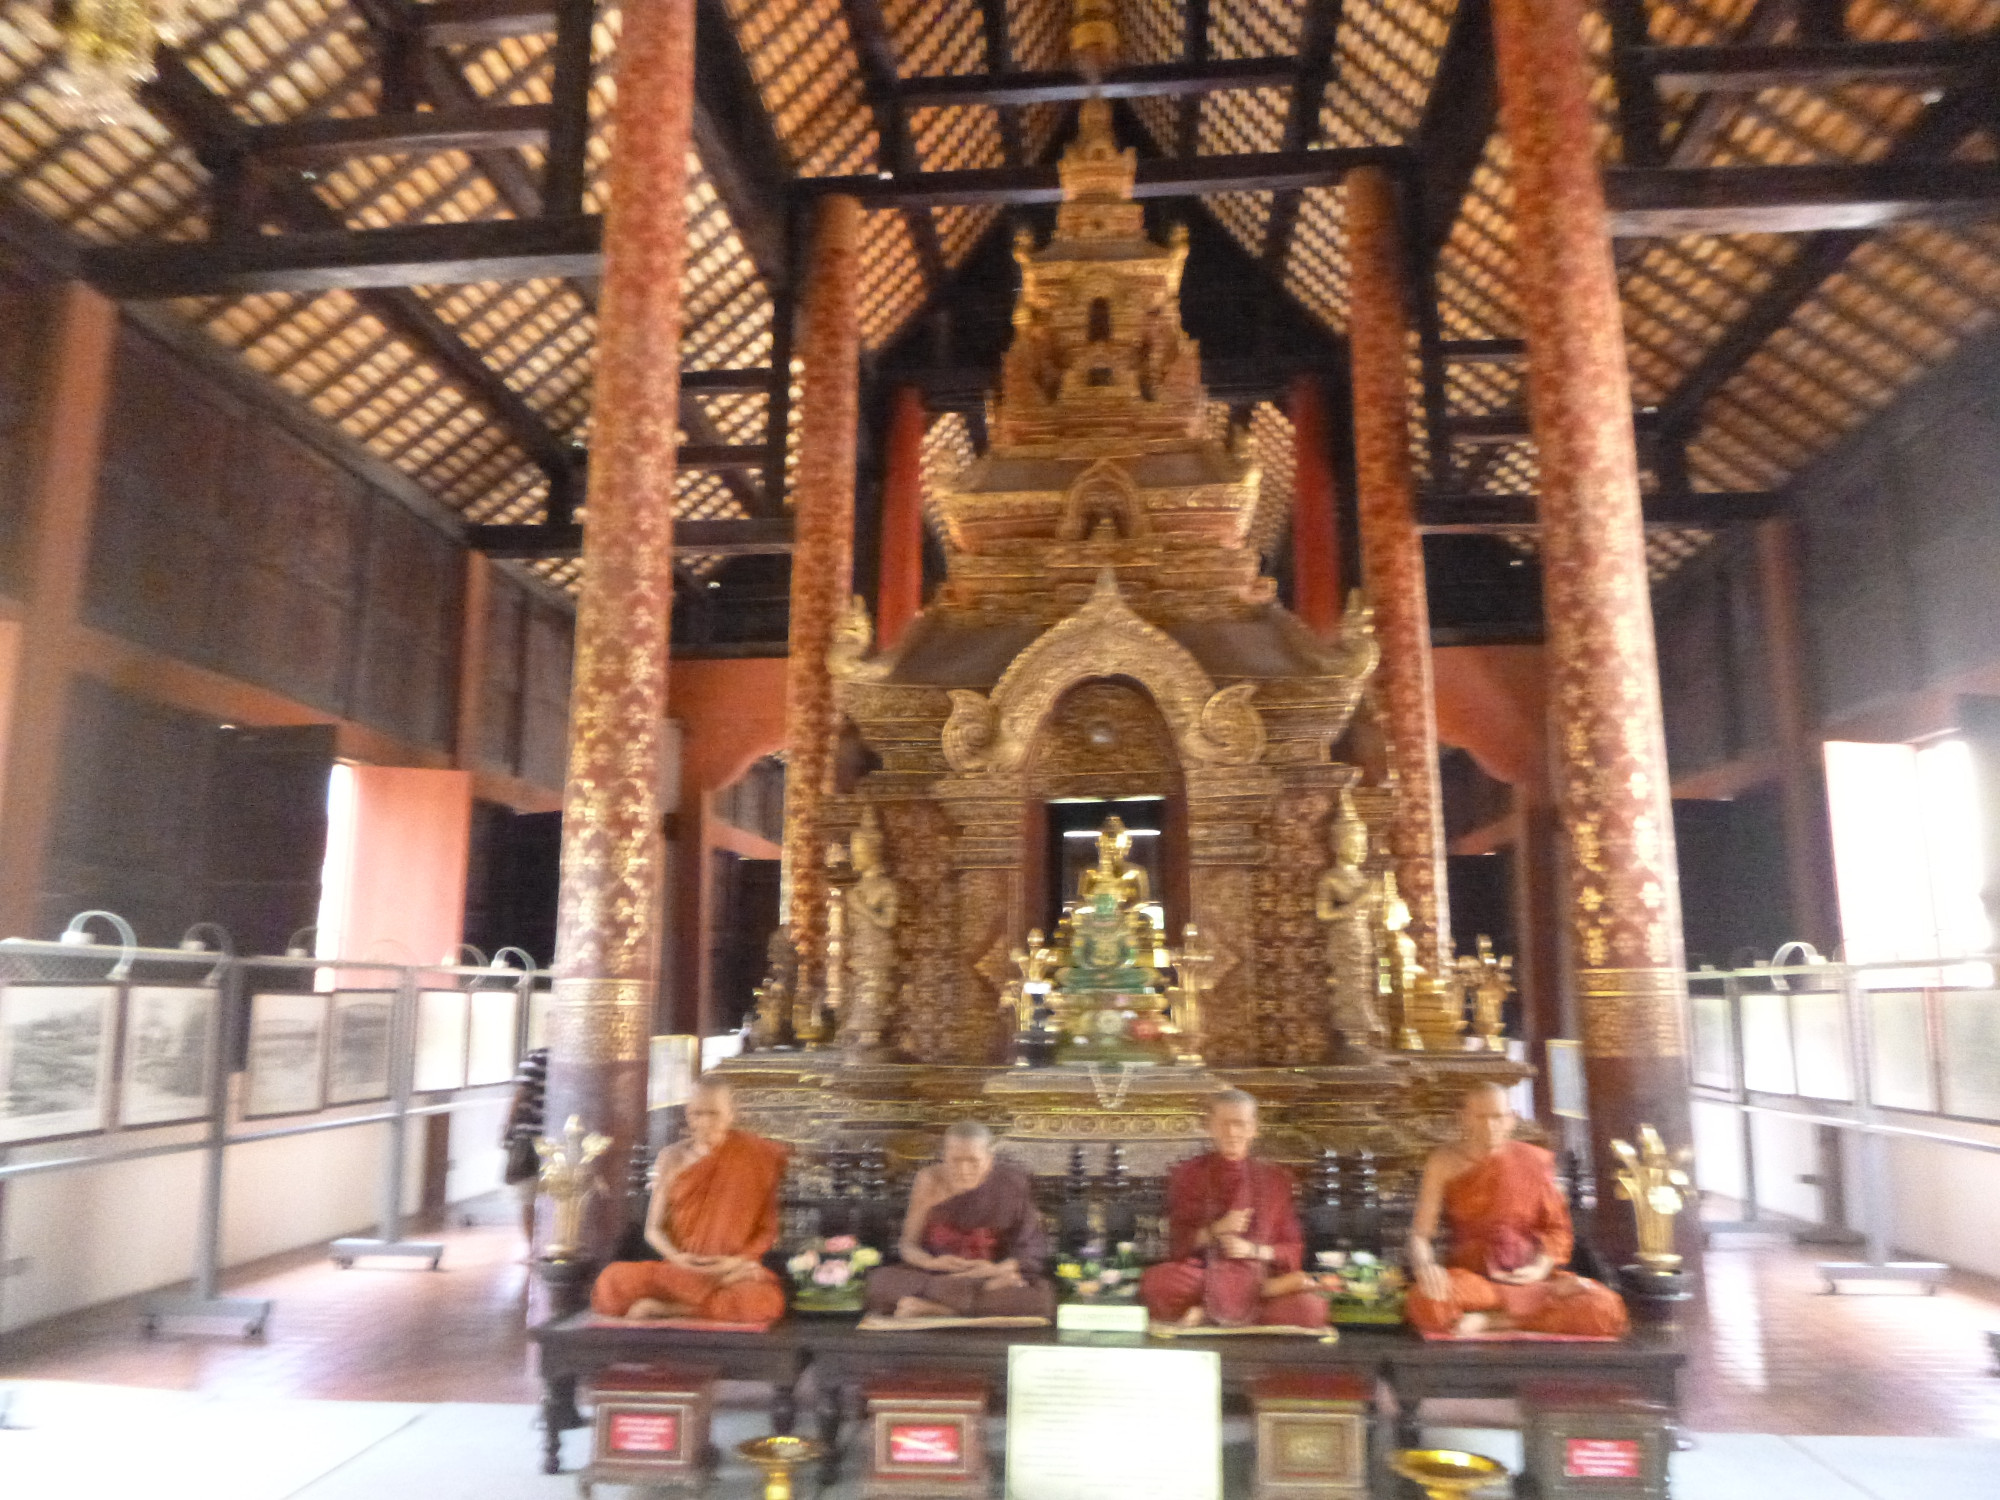 Buddha and Monk figures